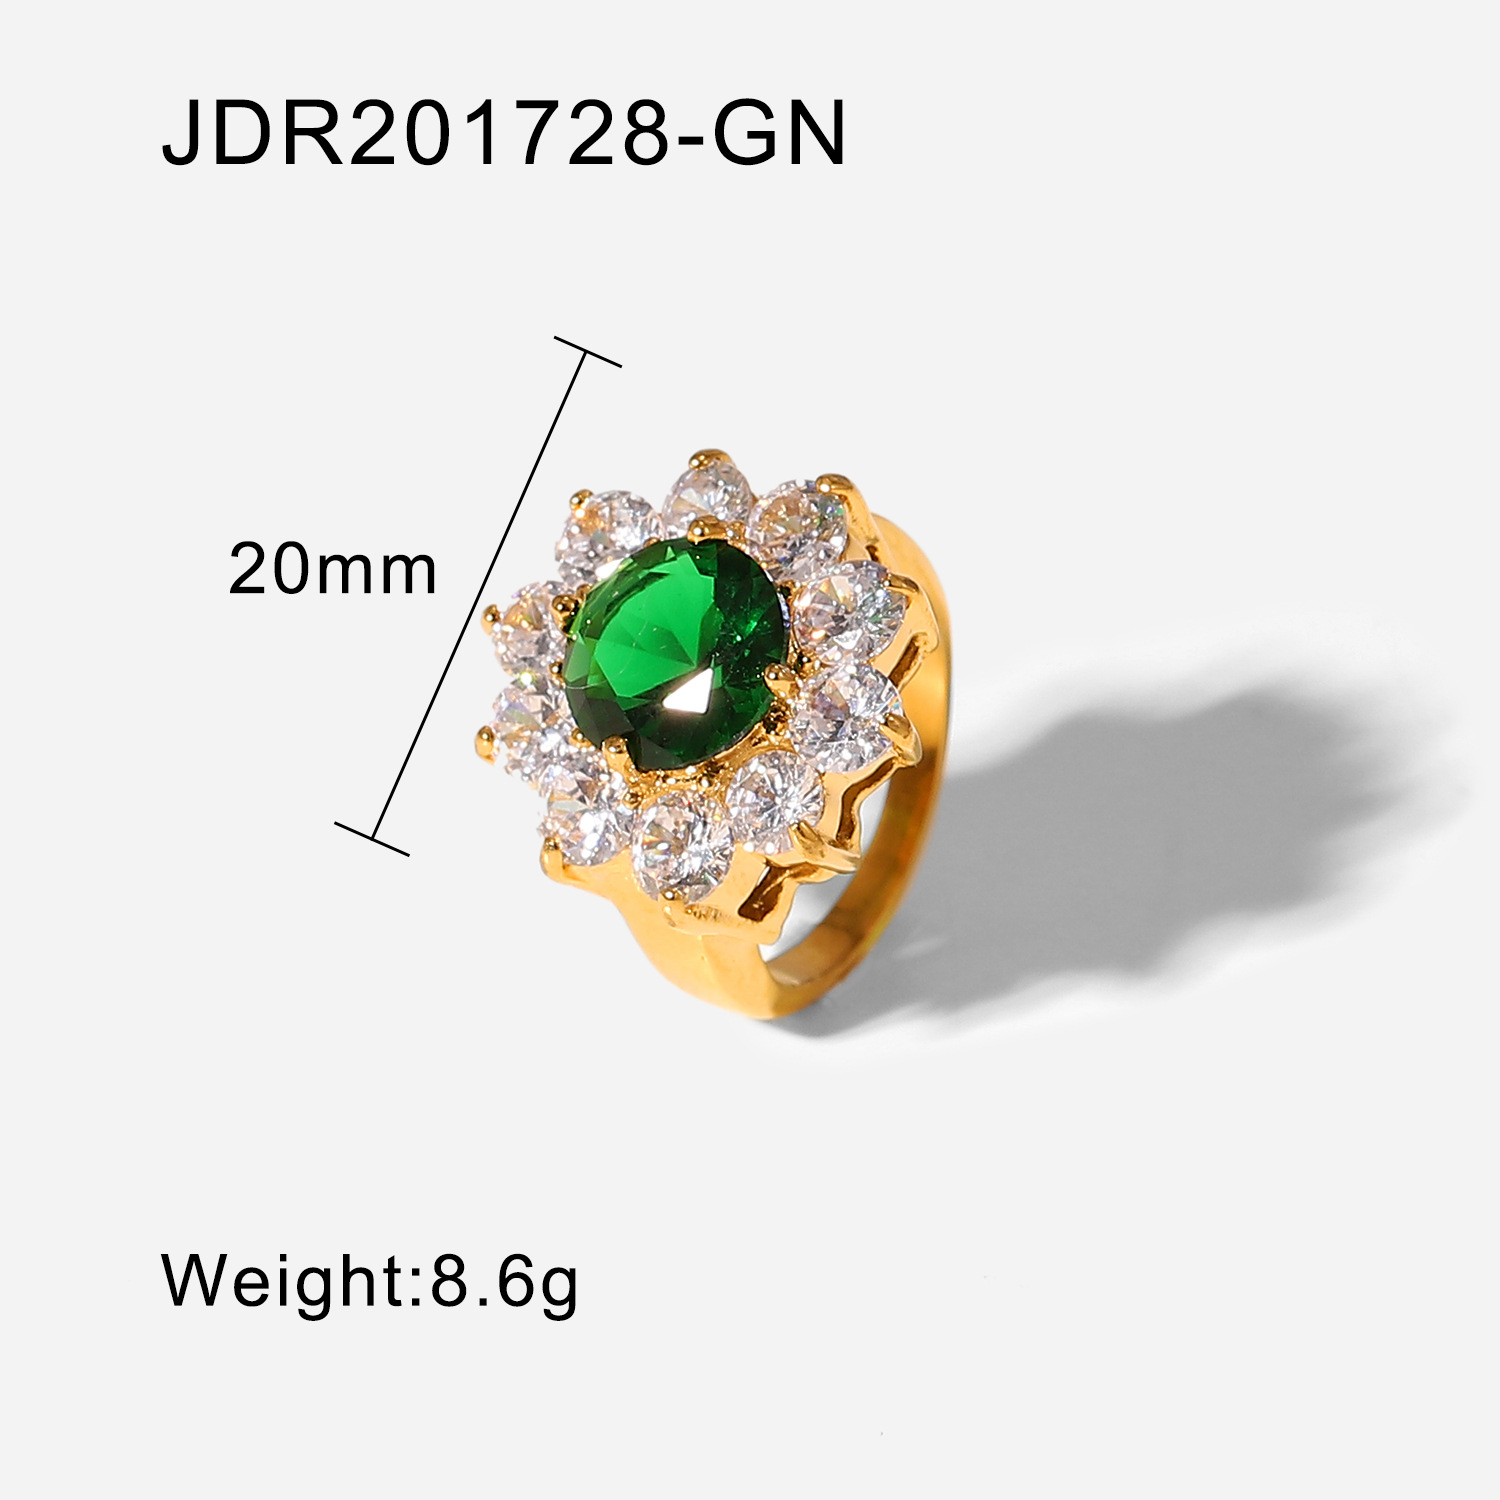 JDR201728-GN 8